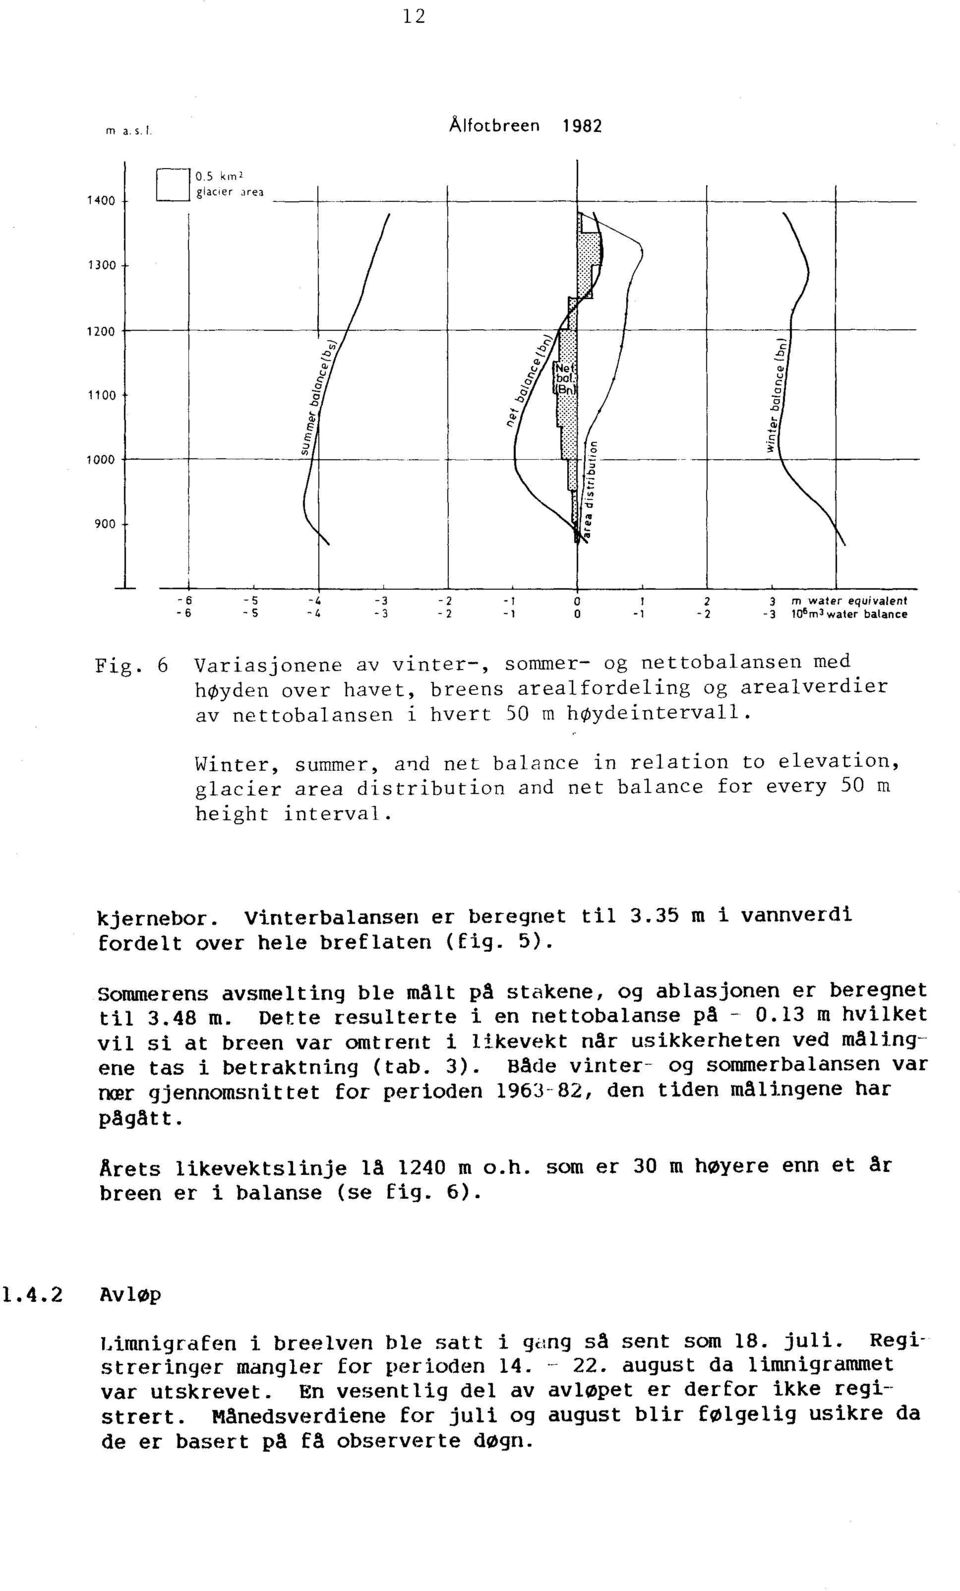 water balanee Fig. 6 Variasjonene av vinter-, sornmer- og nettobalansen med høyden over havet, breens areal fordeling og arealverdier av nettobalansen i hvert 50 m høydeintervall.